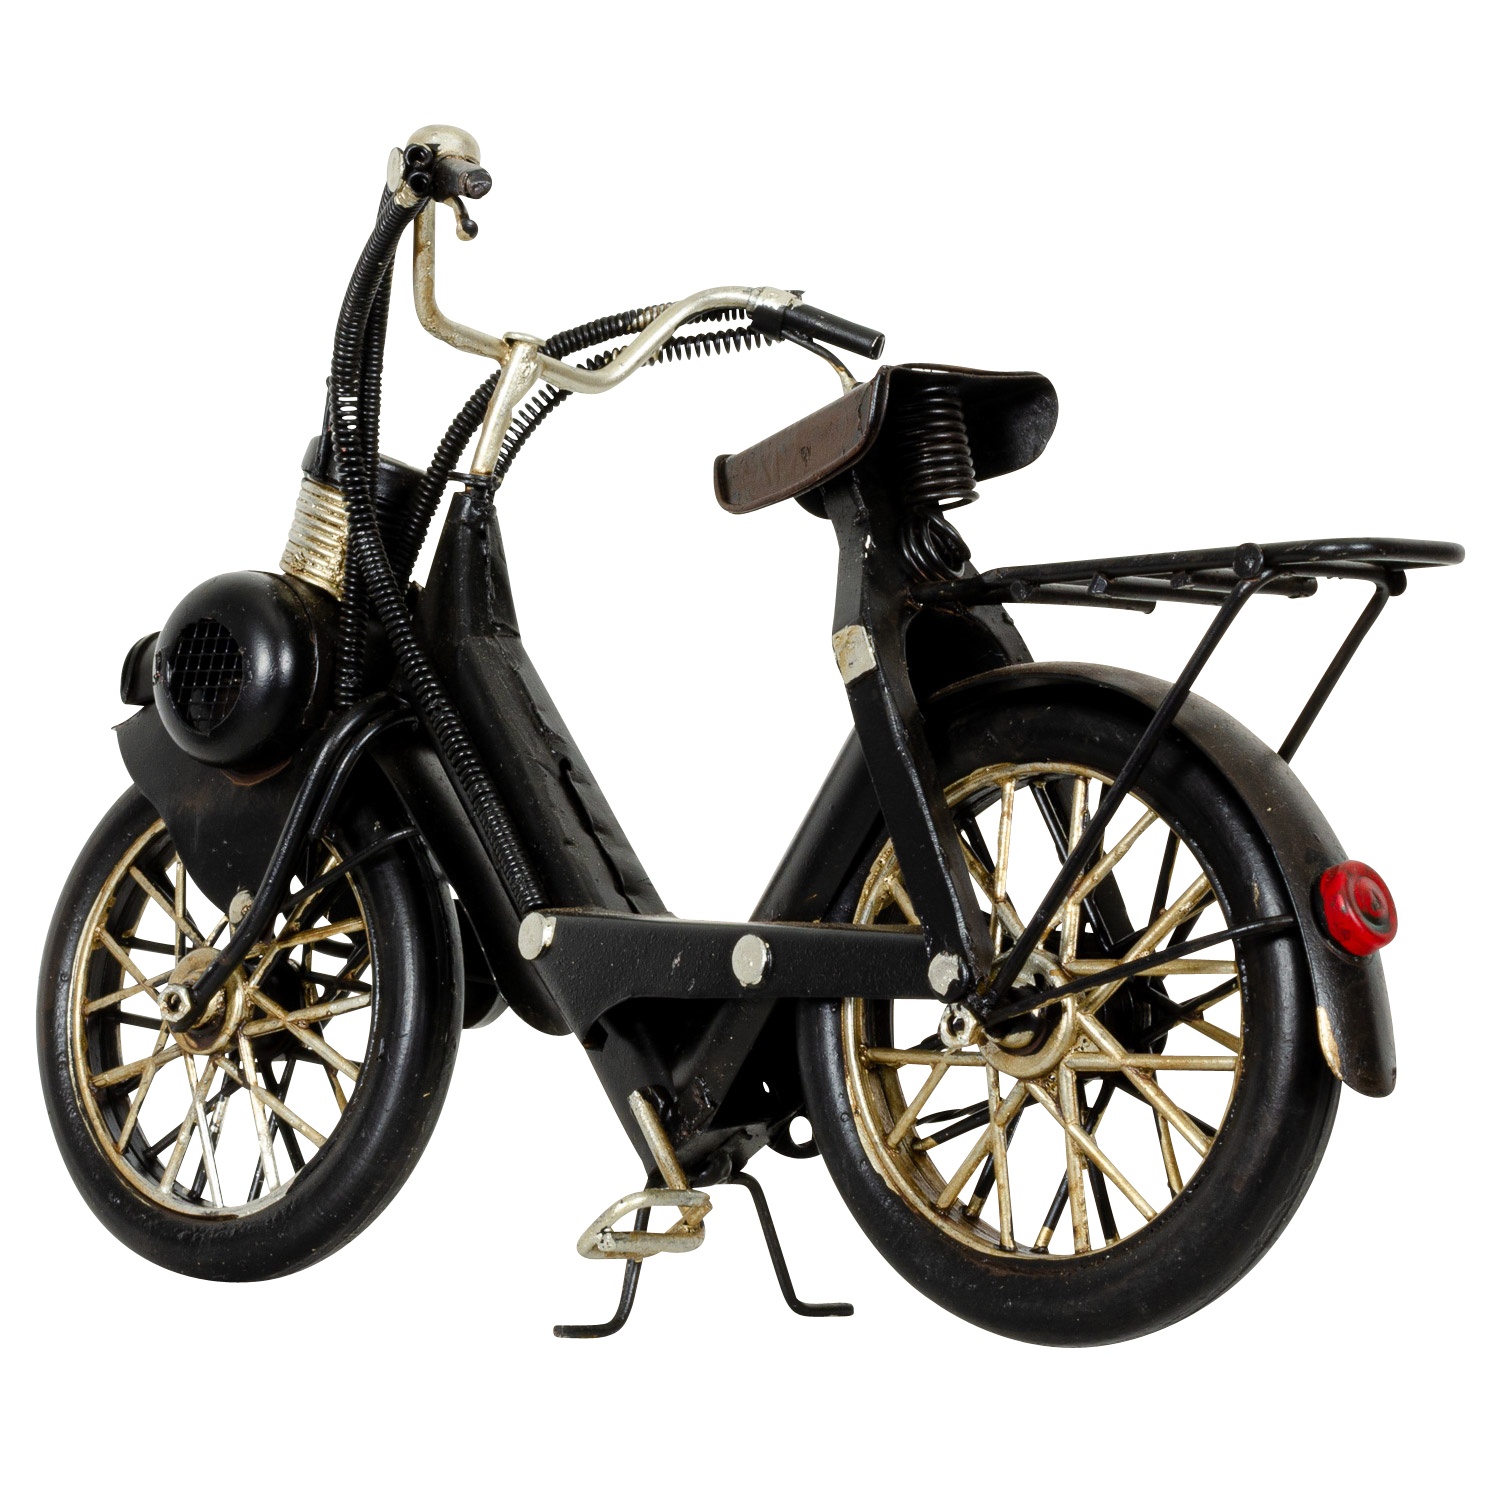 Modell Fahrrad Mofa Mofamodell Moped Nostalgie Blech Metall Antik-Stil ... - BL 243 6